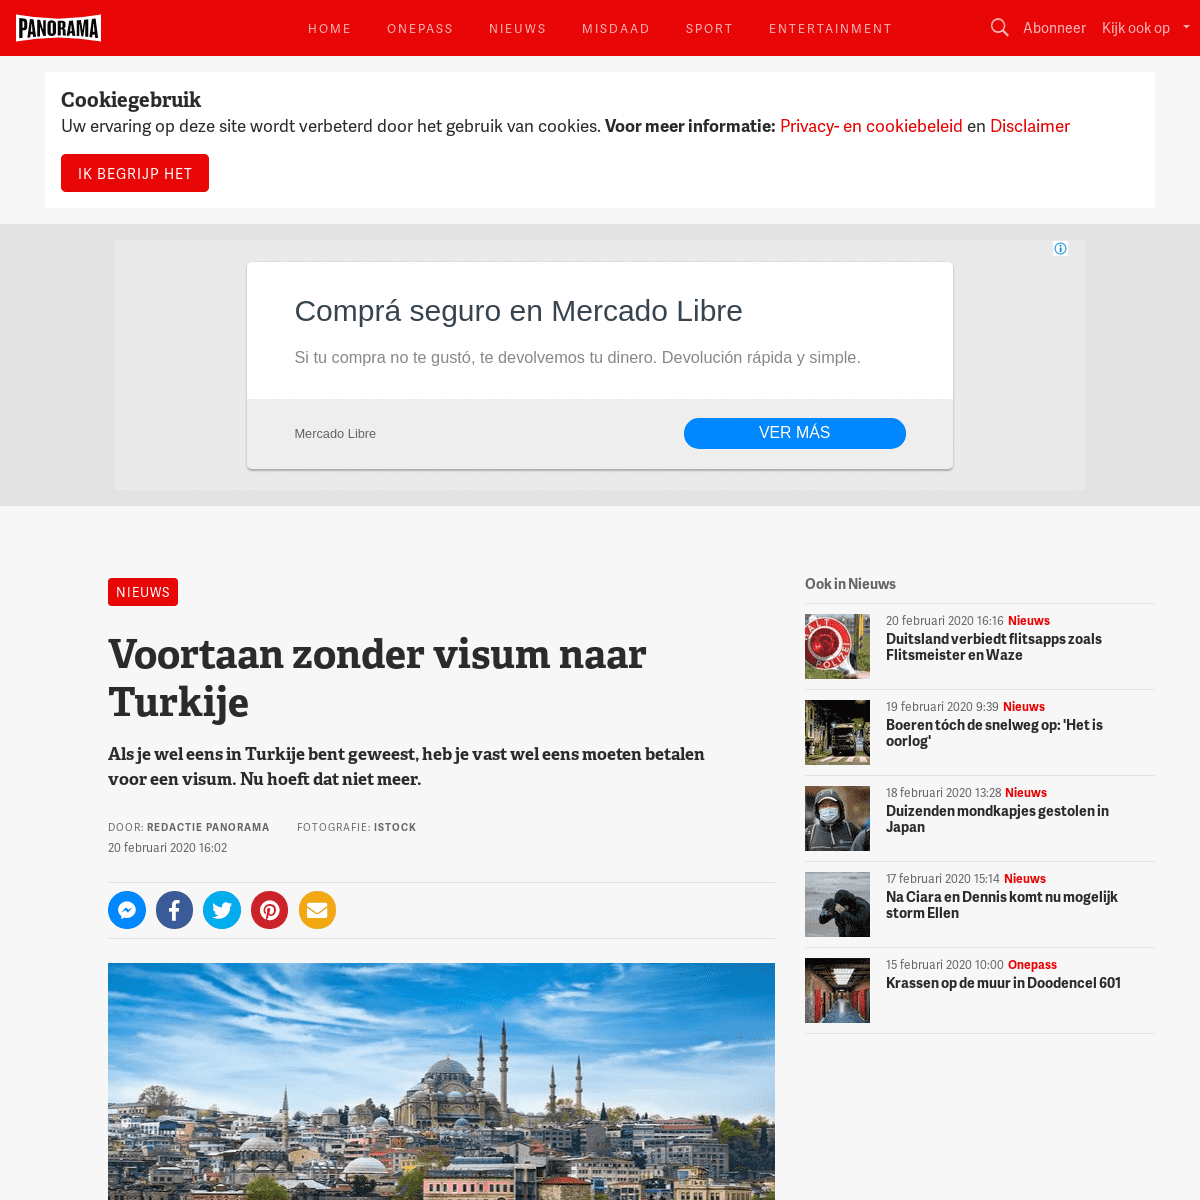 A complete backup of panorama.nl/nieuws/voortaan-zonder-visum-naar-turkije